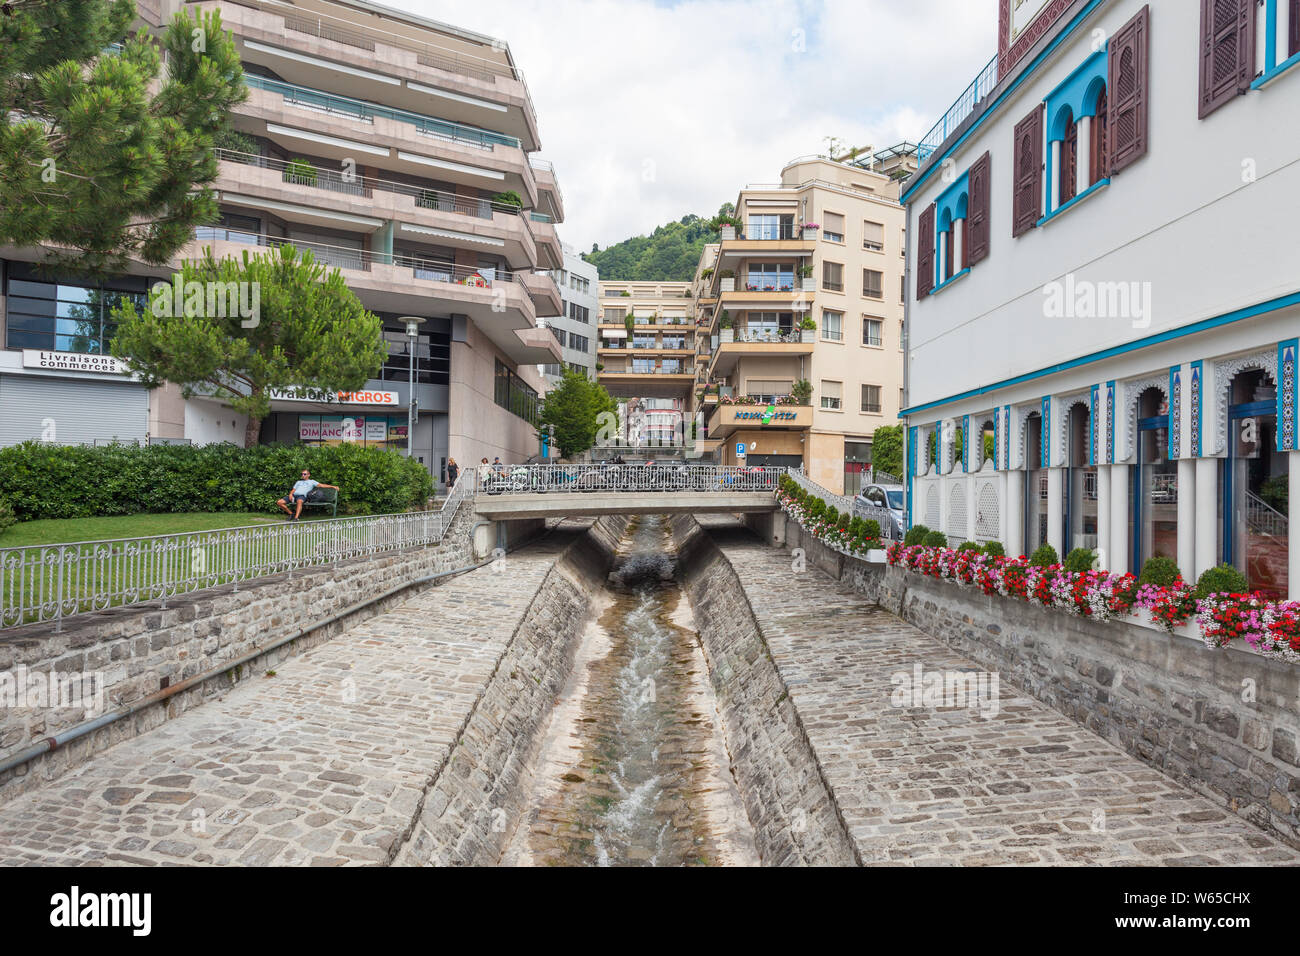 Cours d'eau étroit coulant par riverbed pavée en pierre construit pour protéger des inondations dans la ville de Montreux, Vaud, Suisse durant les somme Banque D'Images